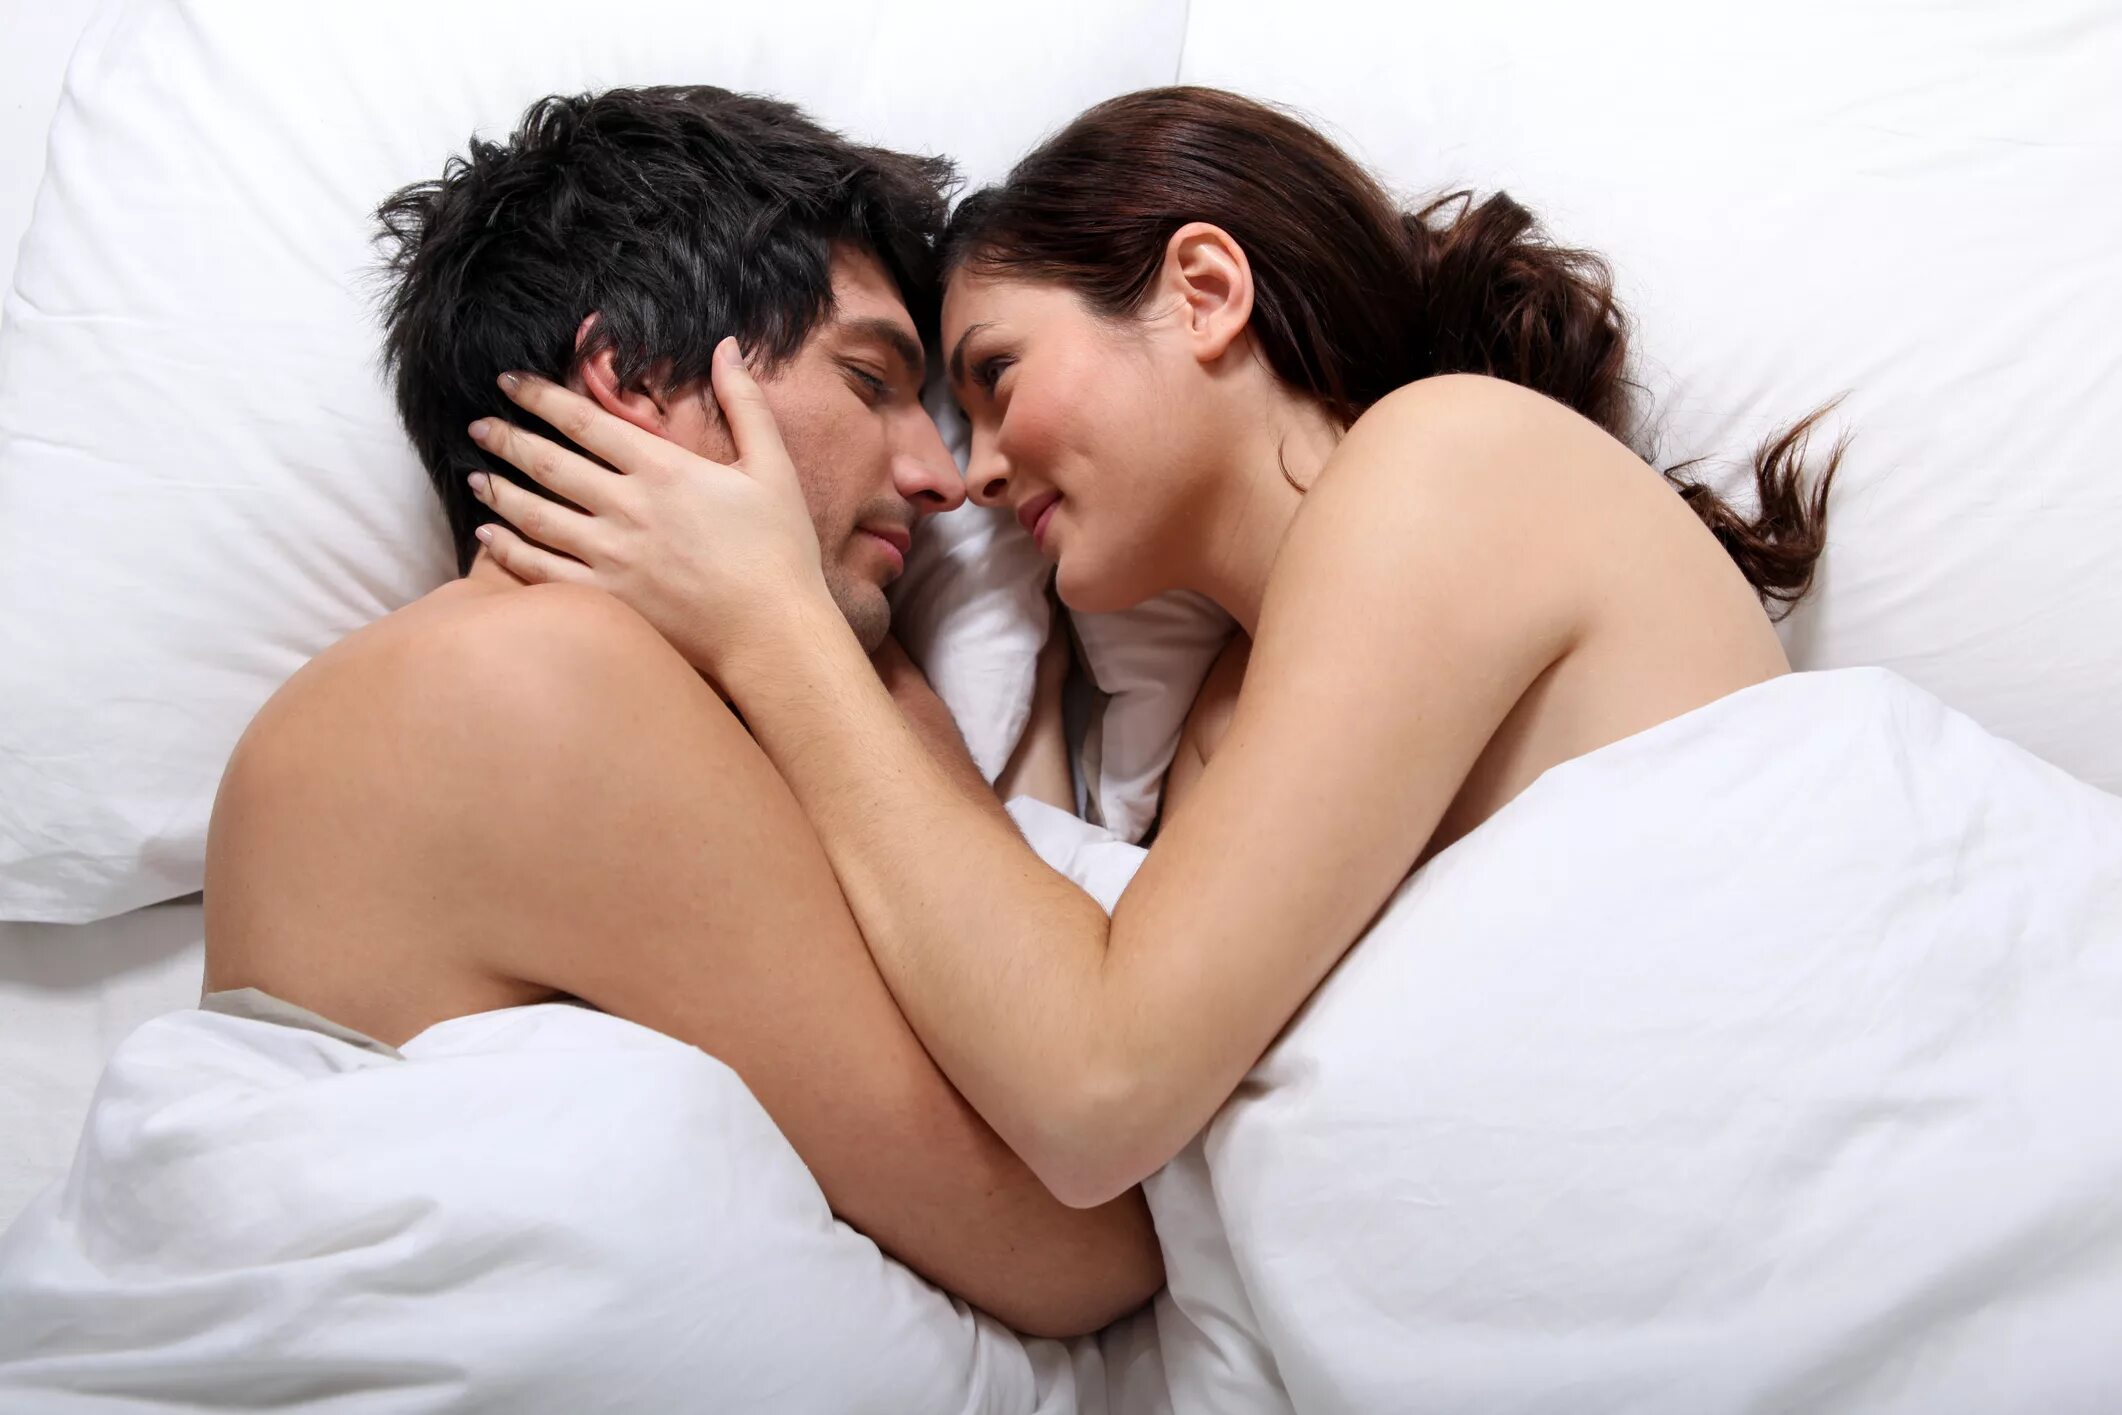 Половые сношения женщиной. Любовные отношения в постели. Мужчина и женщина в постели. Занимаются любовью в кровати.